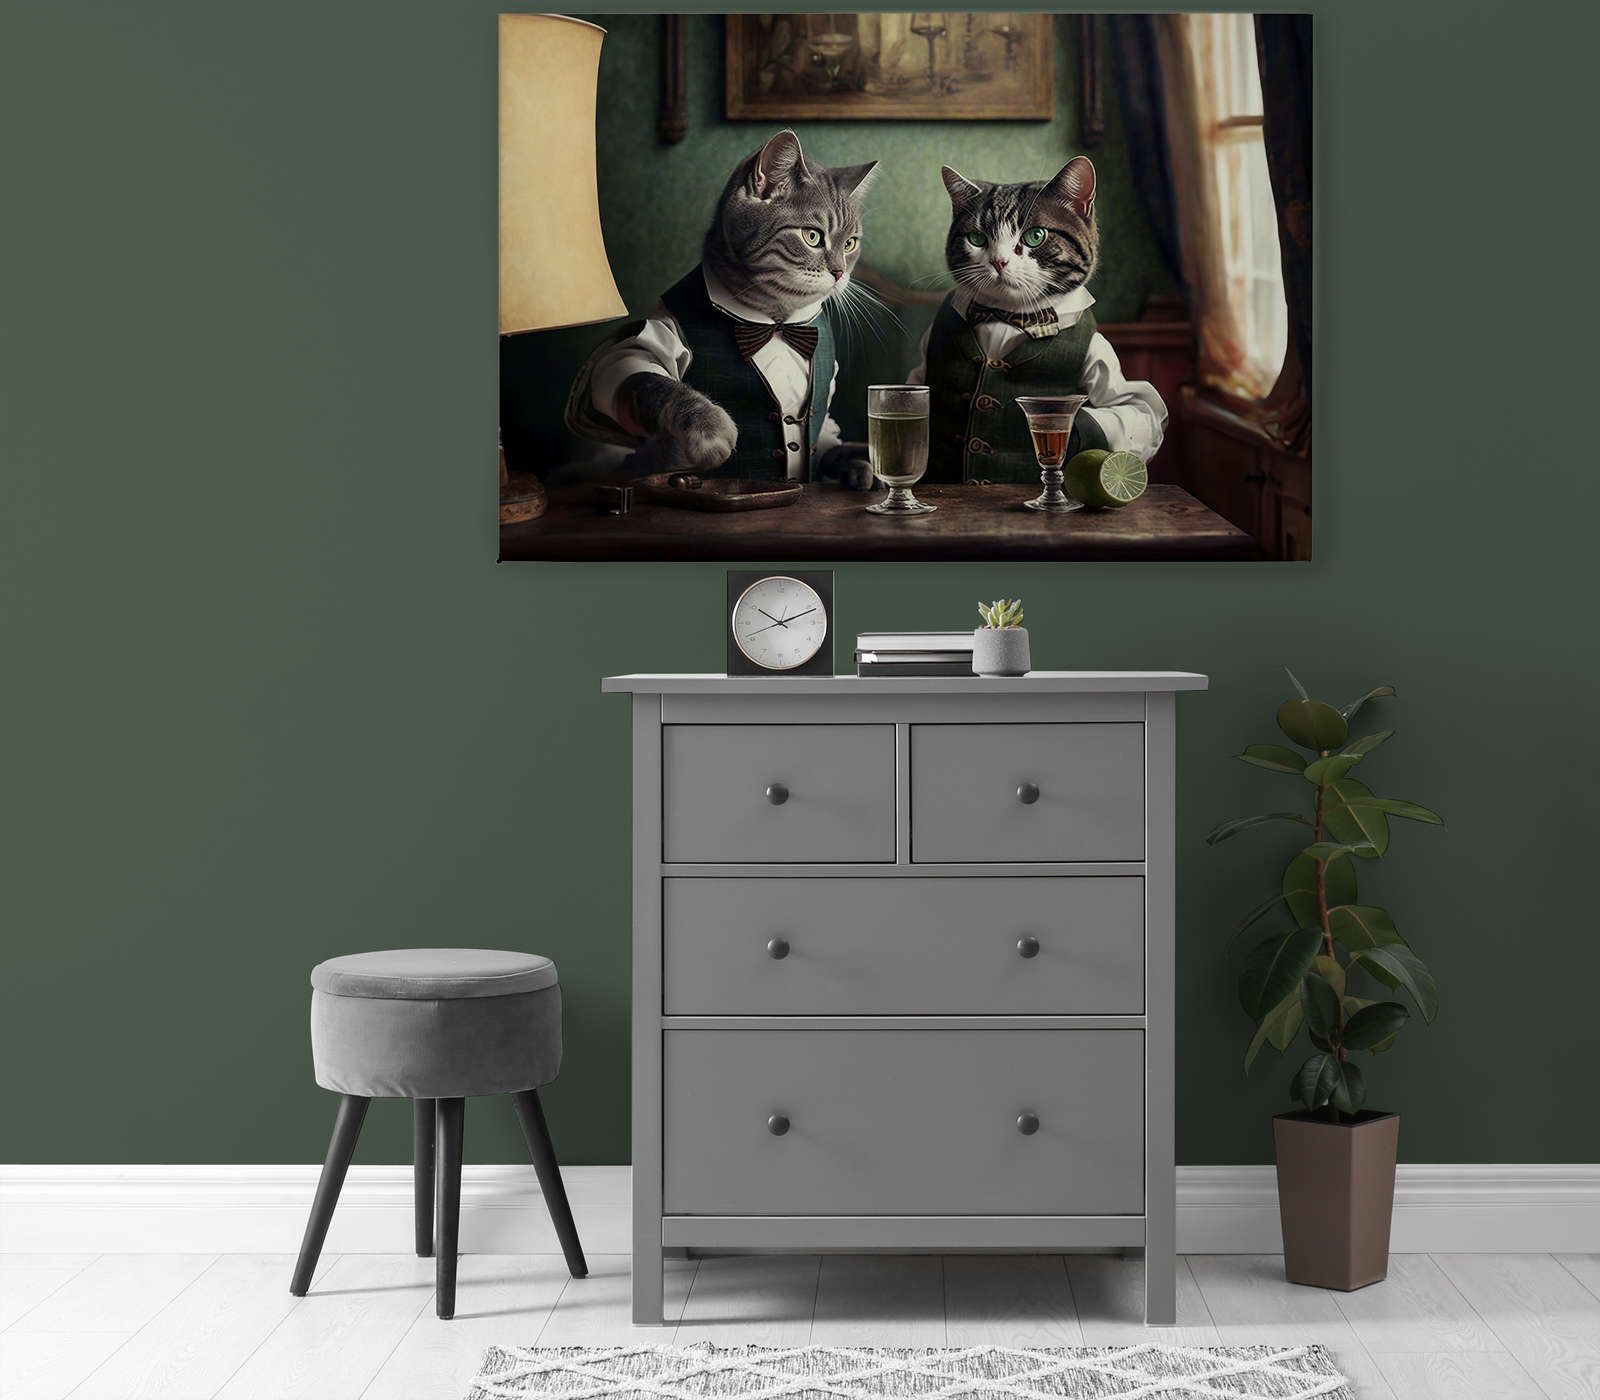             KI Canvas schilderij »Kitty Bar 2« - 120 cm x 80 cm
        